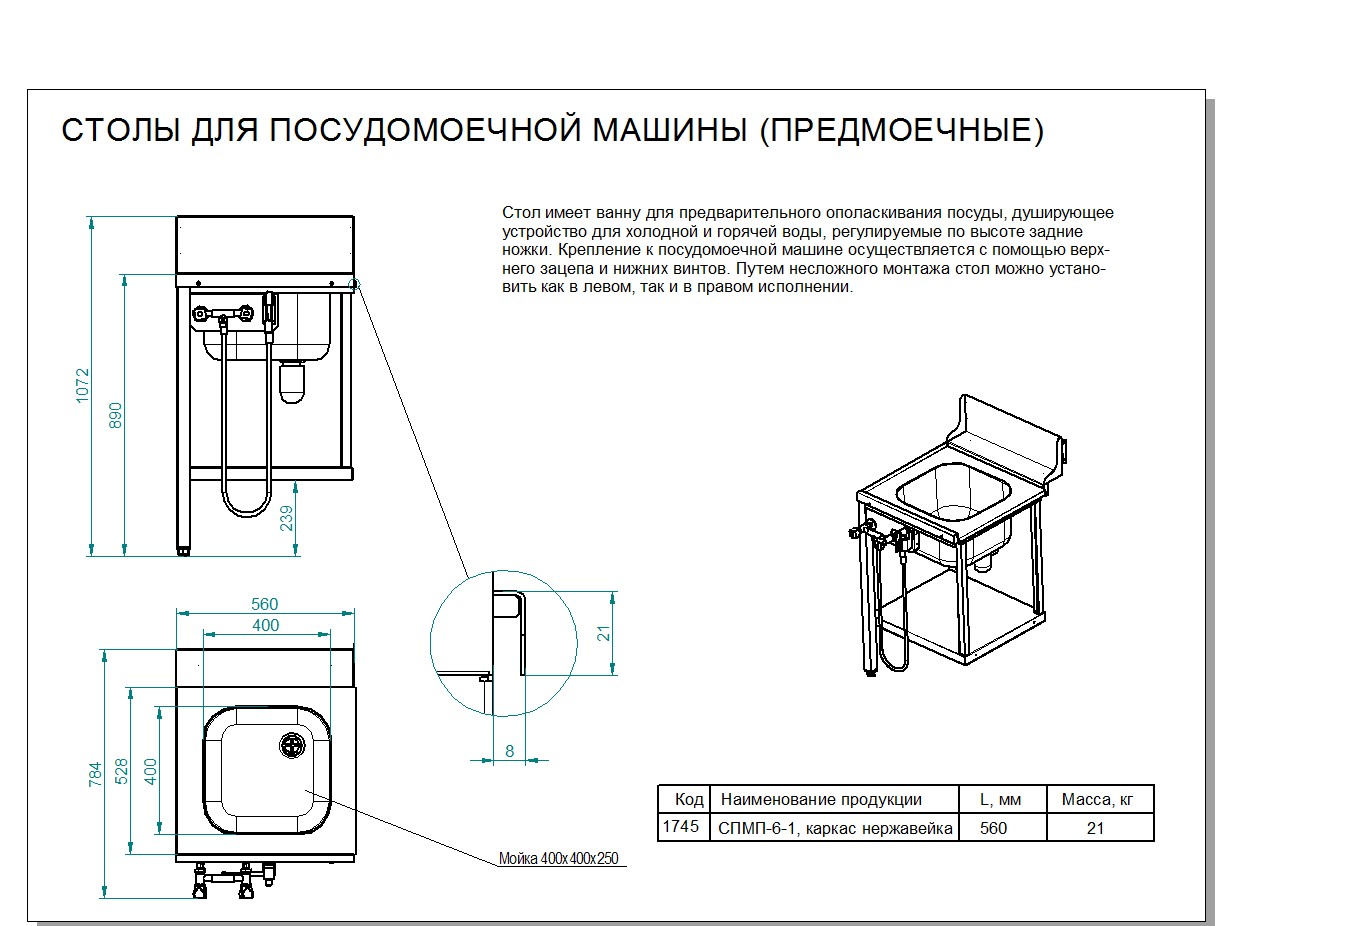 Предмоечный стол для туннельных посудомоечных машин спмп 7 4 с душем